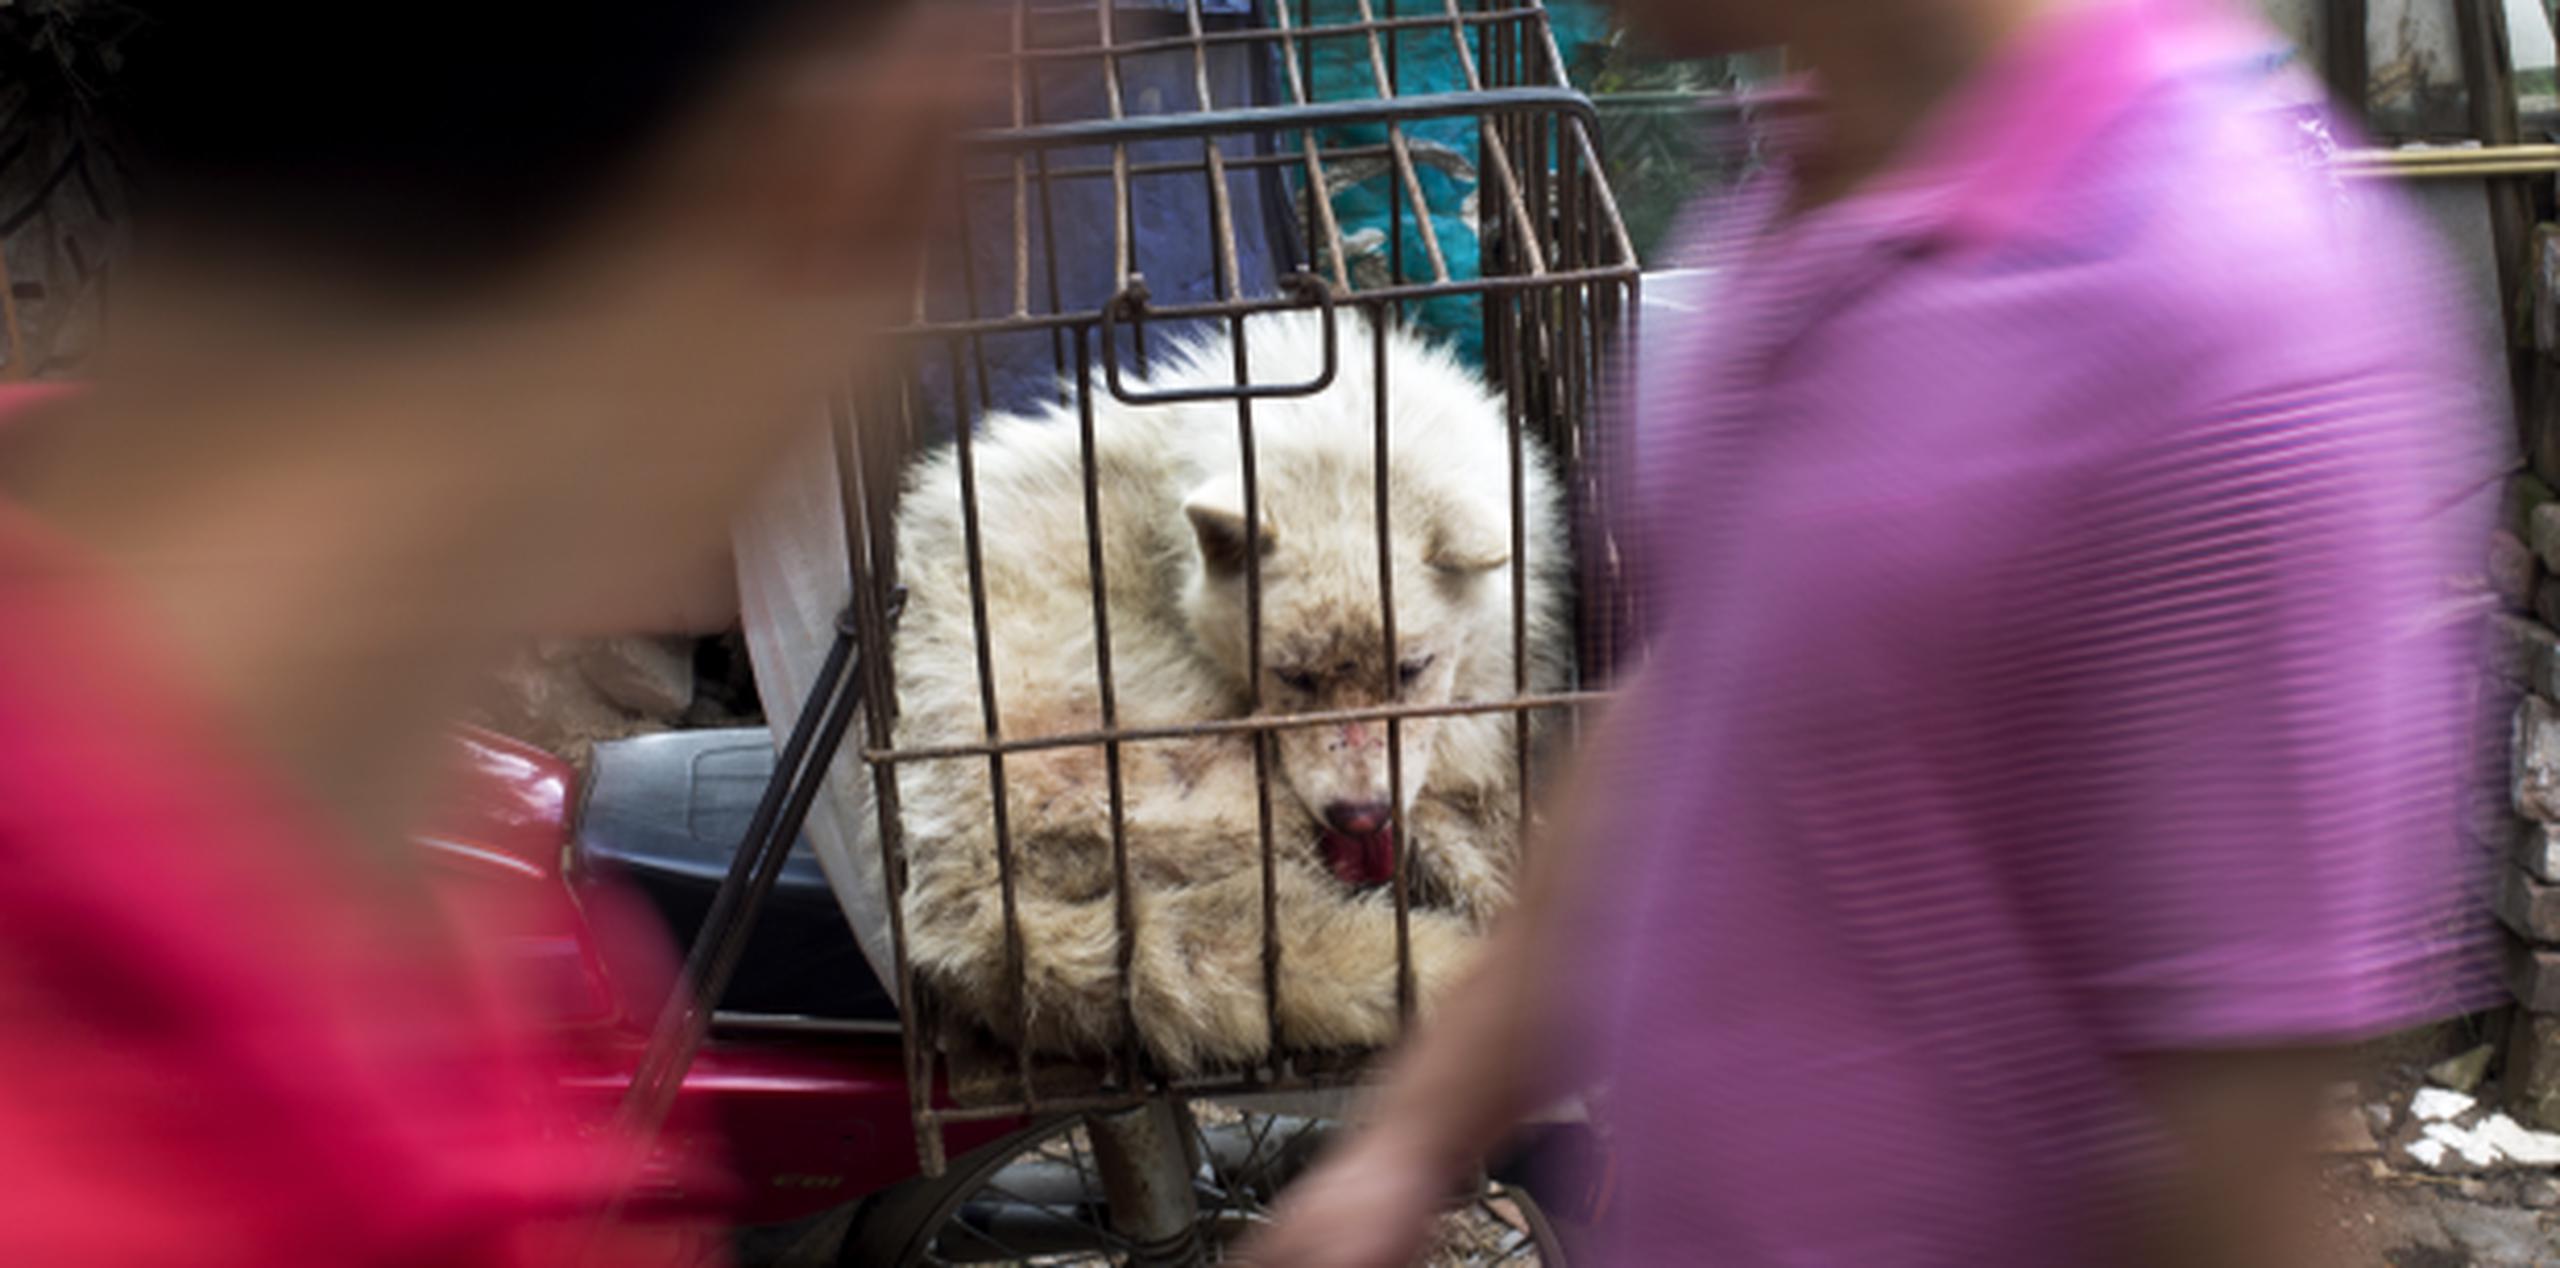 Las jaulas con perros y gatos se amontonaban desde ayer en el mercado Dashichang en Yulin, preparados para ser el plato estrella hoy. (AP/Andy Wong)